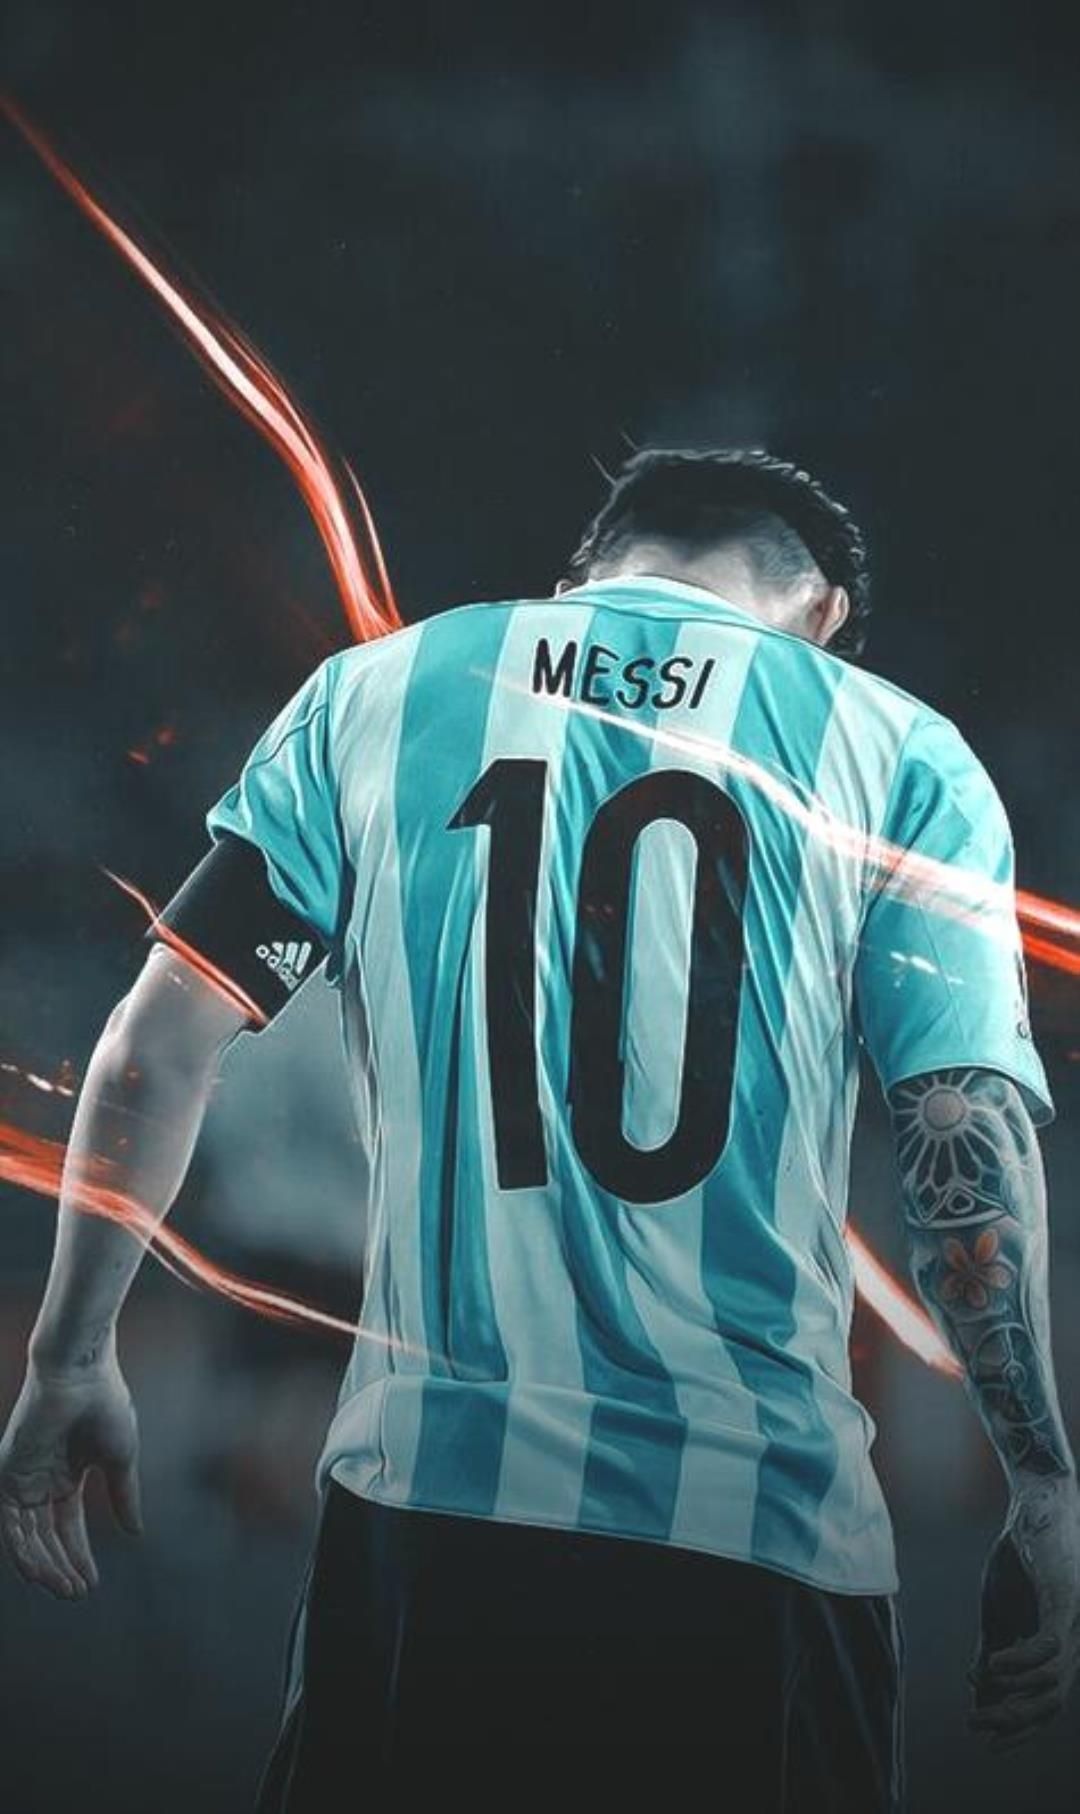 Messi luôn là chủ đề hot hòn họt trong giới bóng đá và các fan hâm mộ của anh ta trên toàn thế giới. Nếu bạn là một fan cuồng nhiệt của Messi và đội tuyển Argentina, bạn chắc chắn sẽ thích bất kỳ hình nền nào với hình ảnh sắc nét của anh ta. Hãy tìm hiểu thêm về những hình nền với từ khóa \